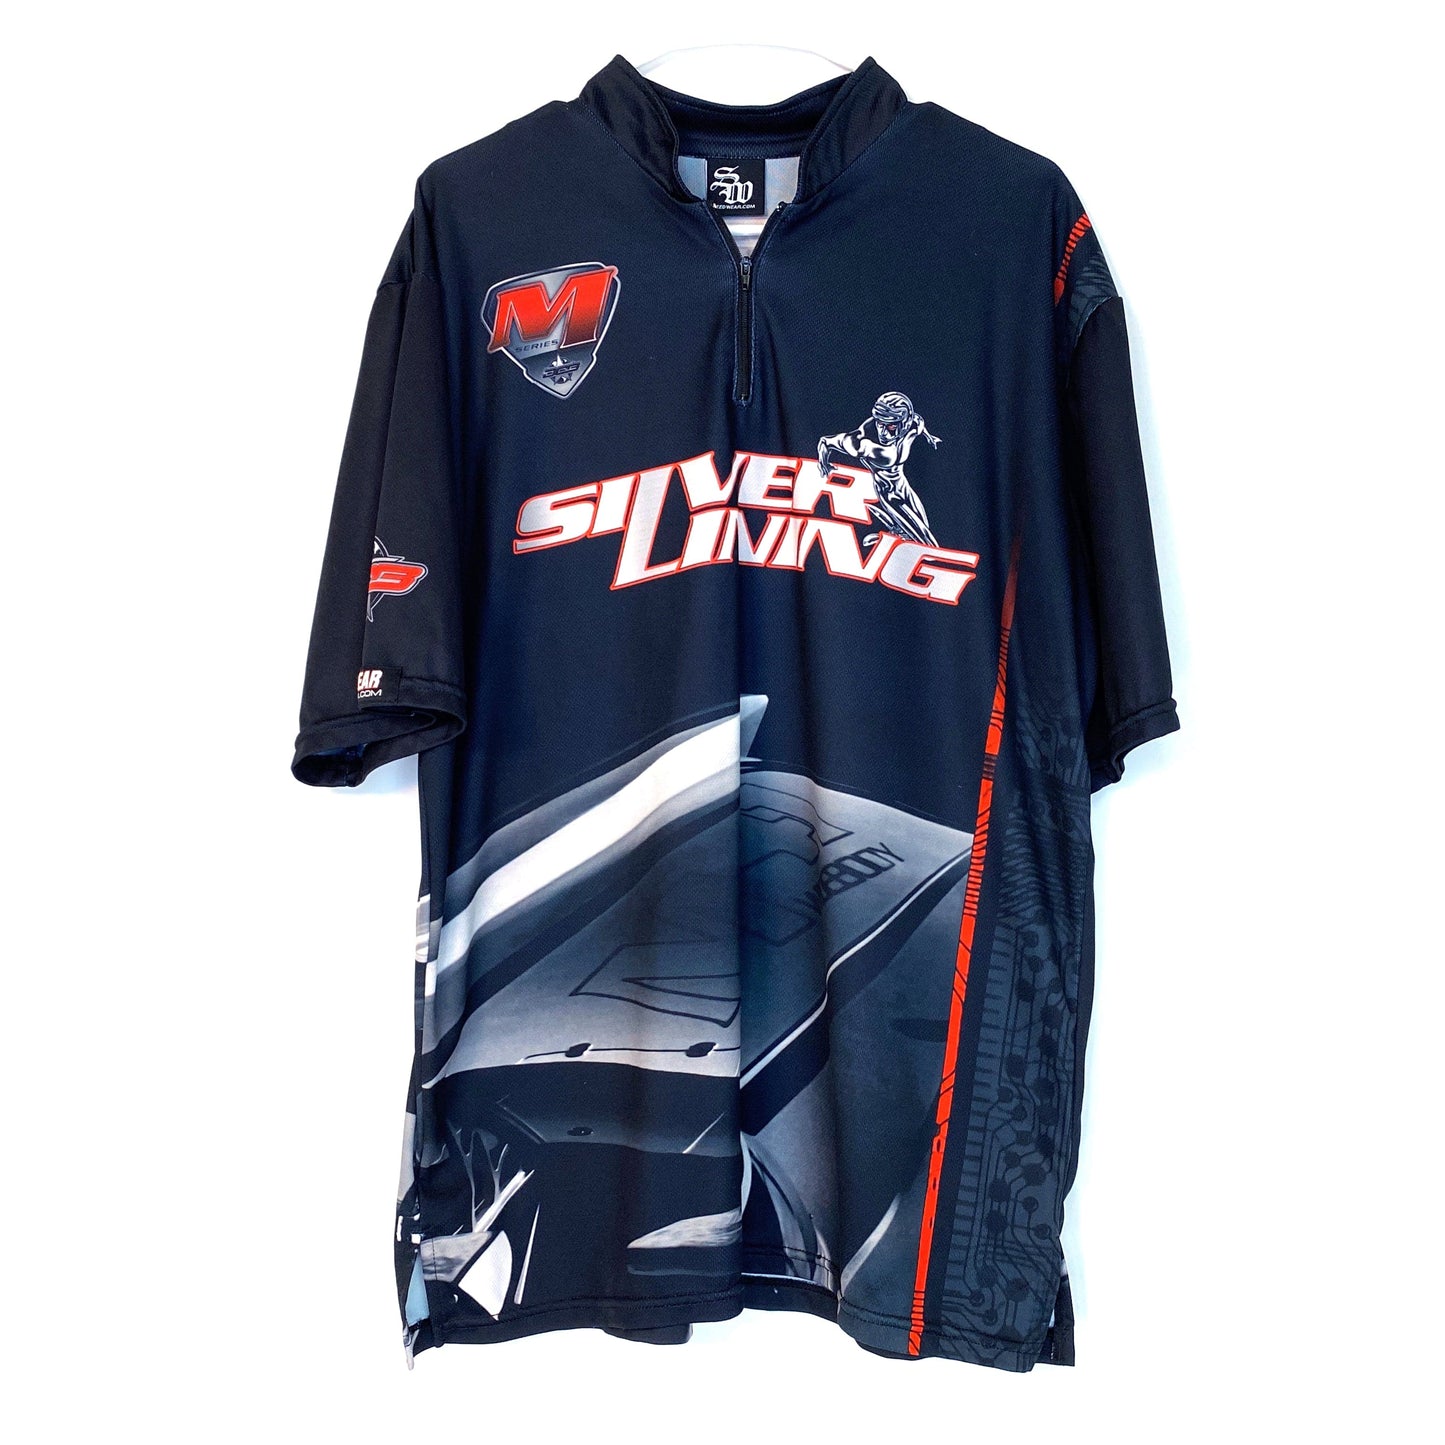 SpeedWear Mens Size L Black ¼ Zip Cycling Jersey Shirt Lightweight